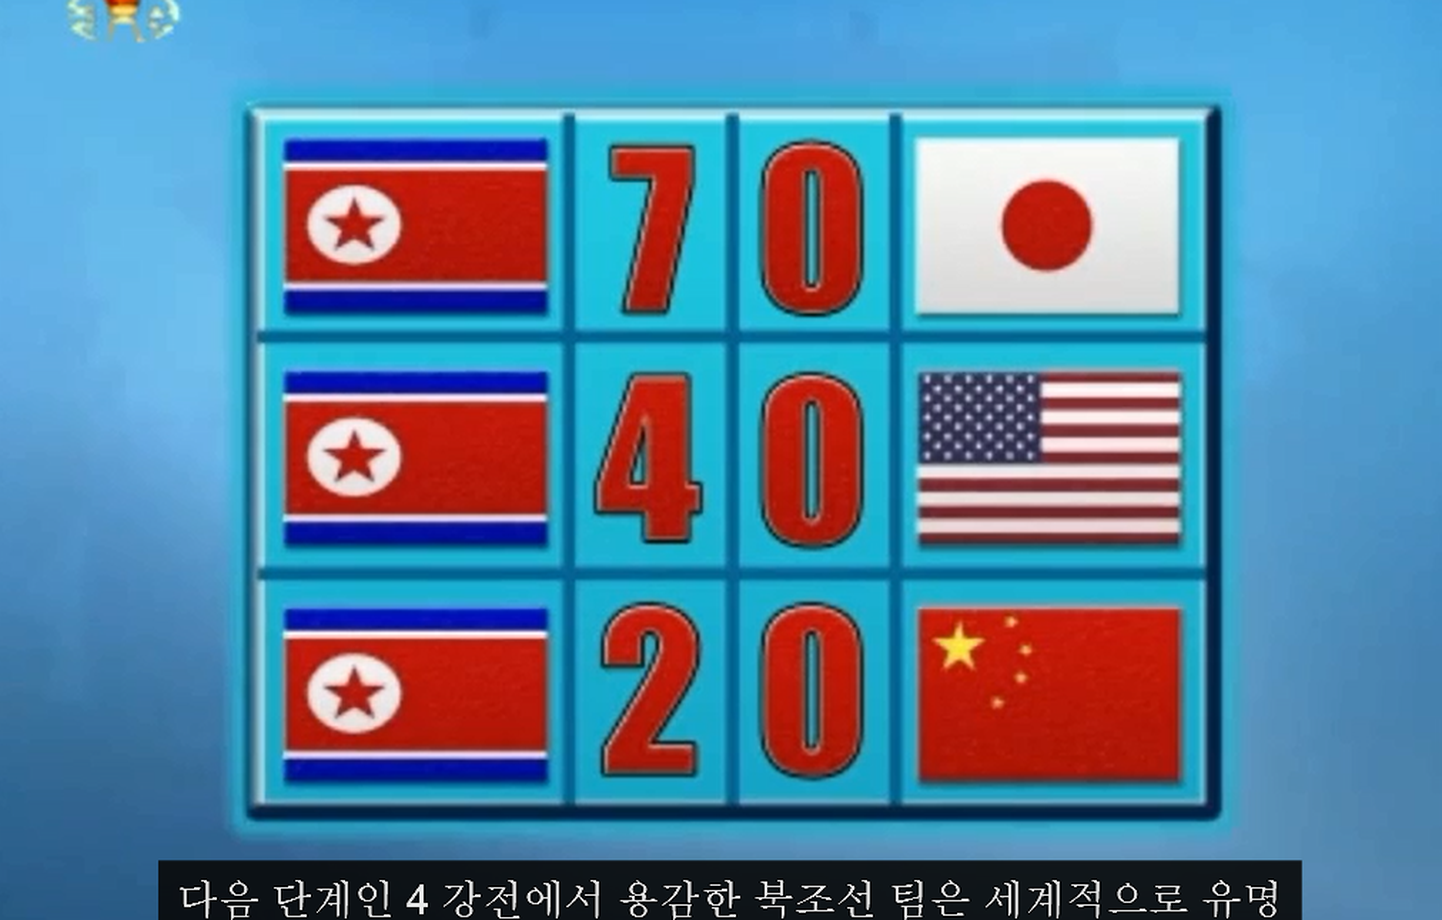 Жителям КНДР сообщили, что сборная их страны вышла в финал ЧМ-2014